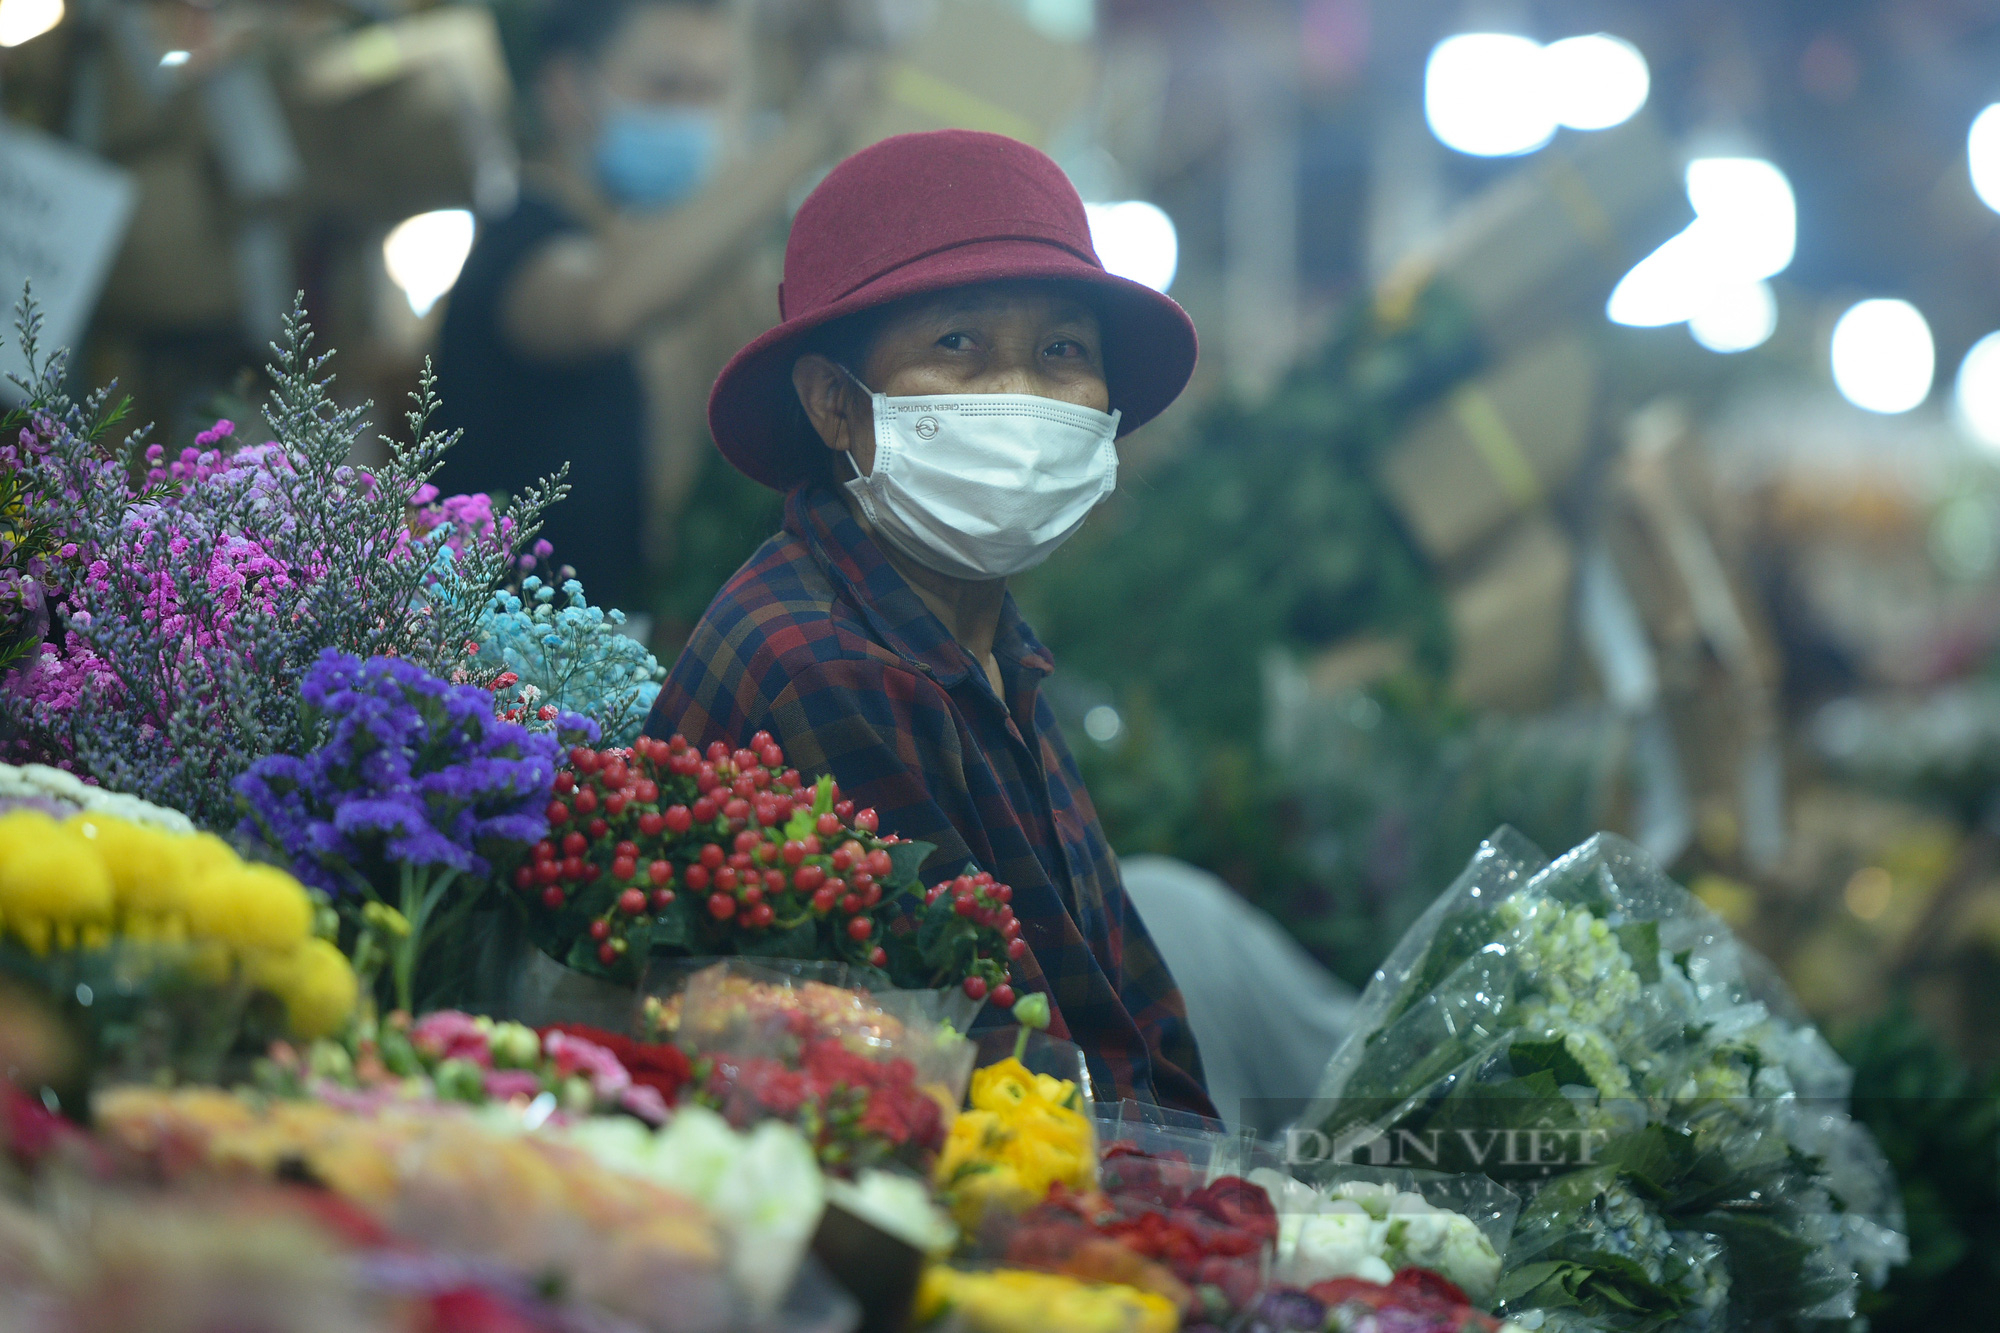 Chợ hoa lớn nhất Hà Nội vắng khách trước ngày 8/3: Giá hoa giảm hơn một nữa, tiểu thương ngủ gật vì vắng khách - Ảnh 4.